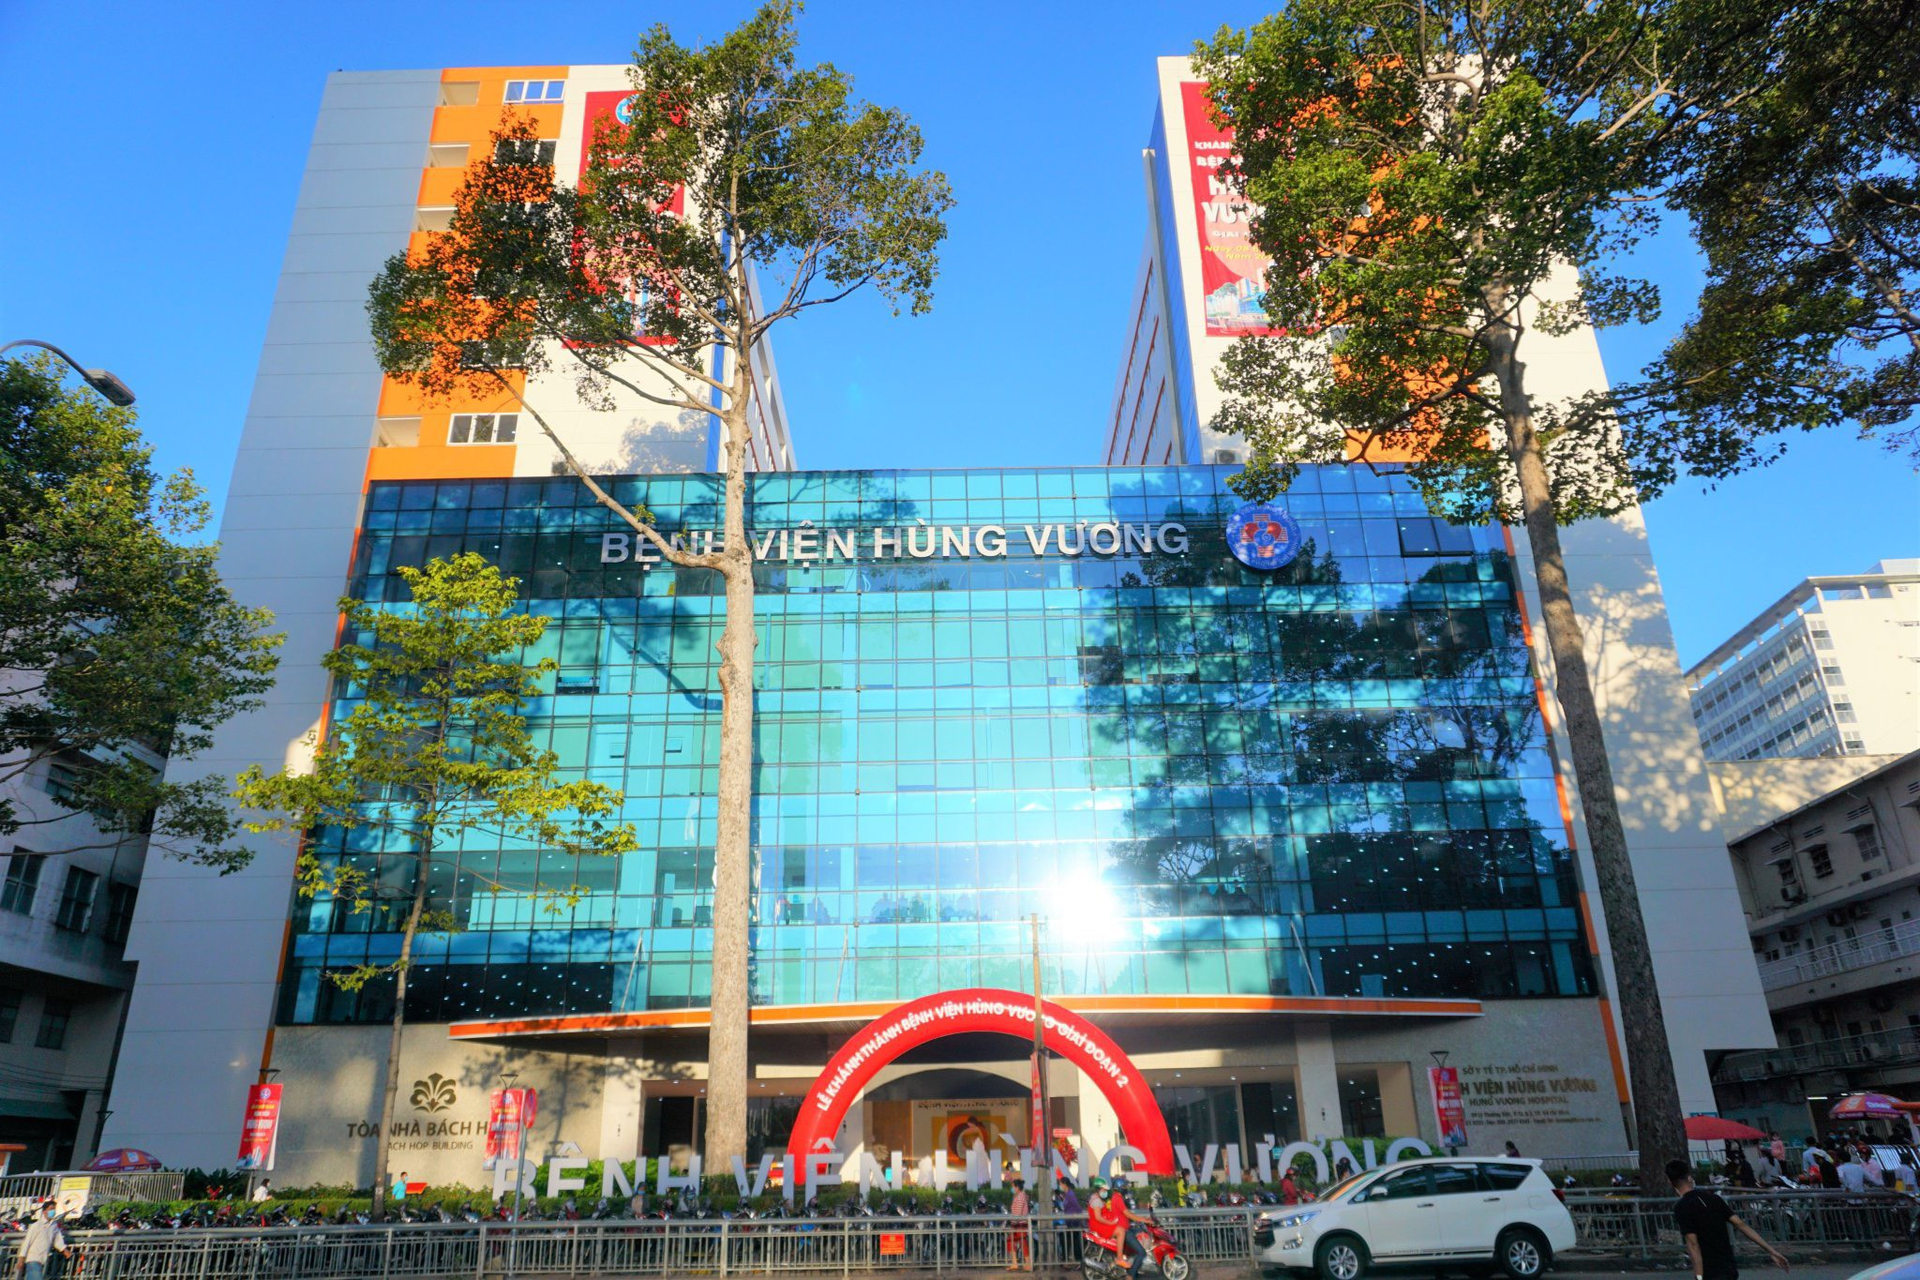 Bệnh viện Hùng Vương đứng thứ nhất trong bảng xếp hạng 10 bệnh viện tốt nhất TP.HCM.